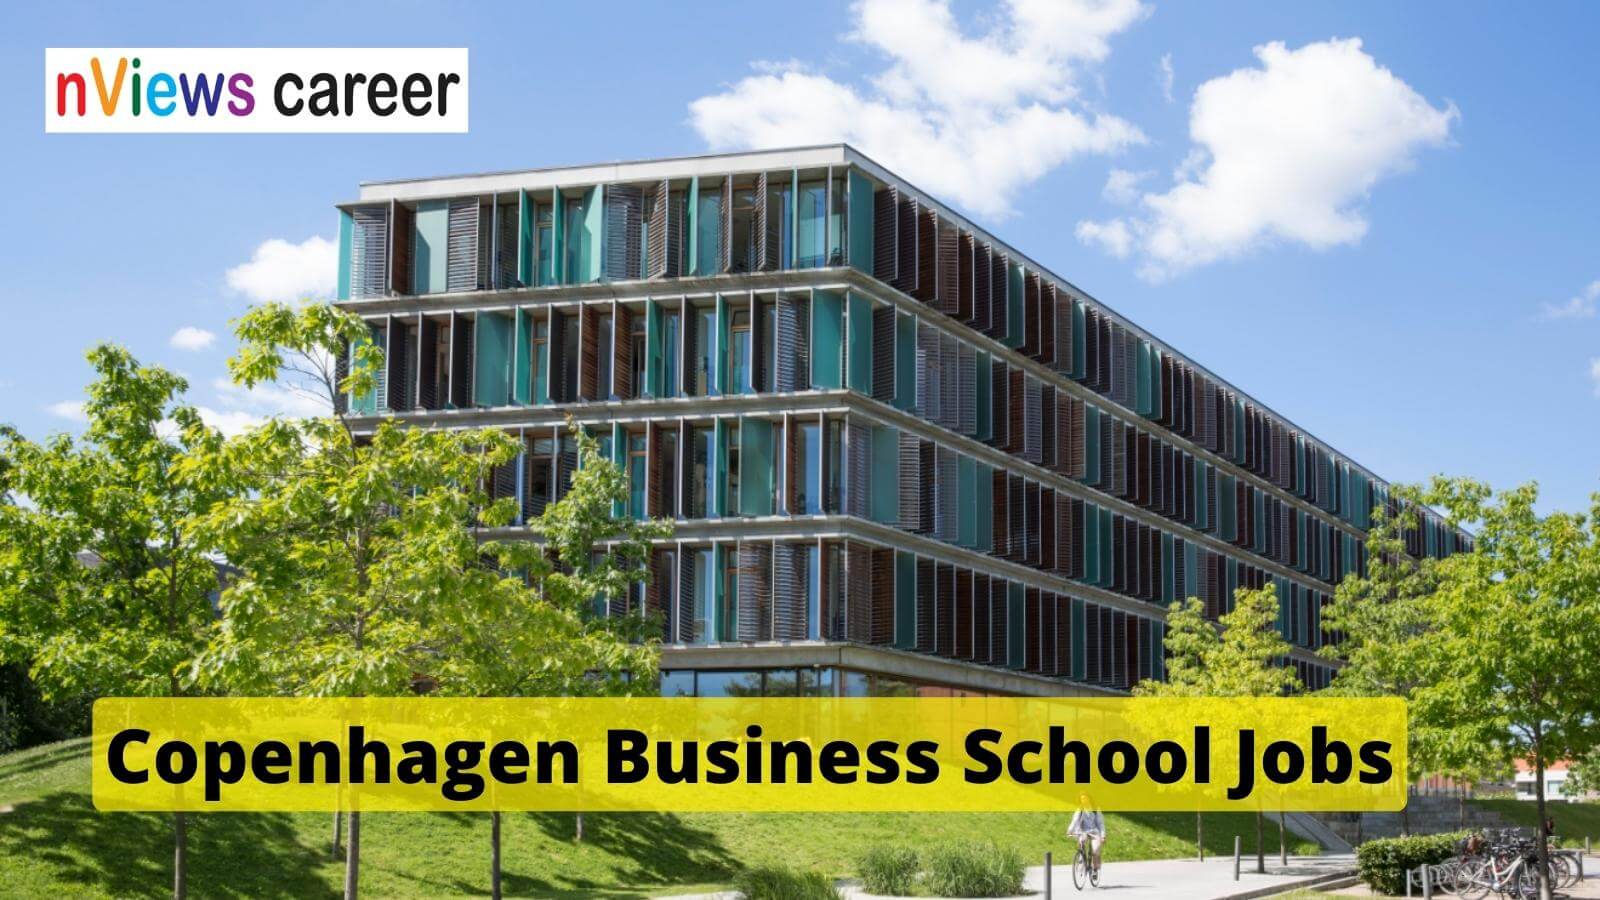 Copenhagen Business School Jobs Background Cbs Kilen Building